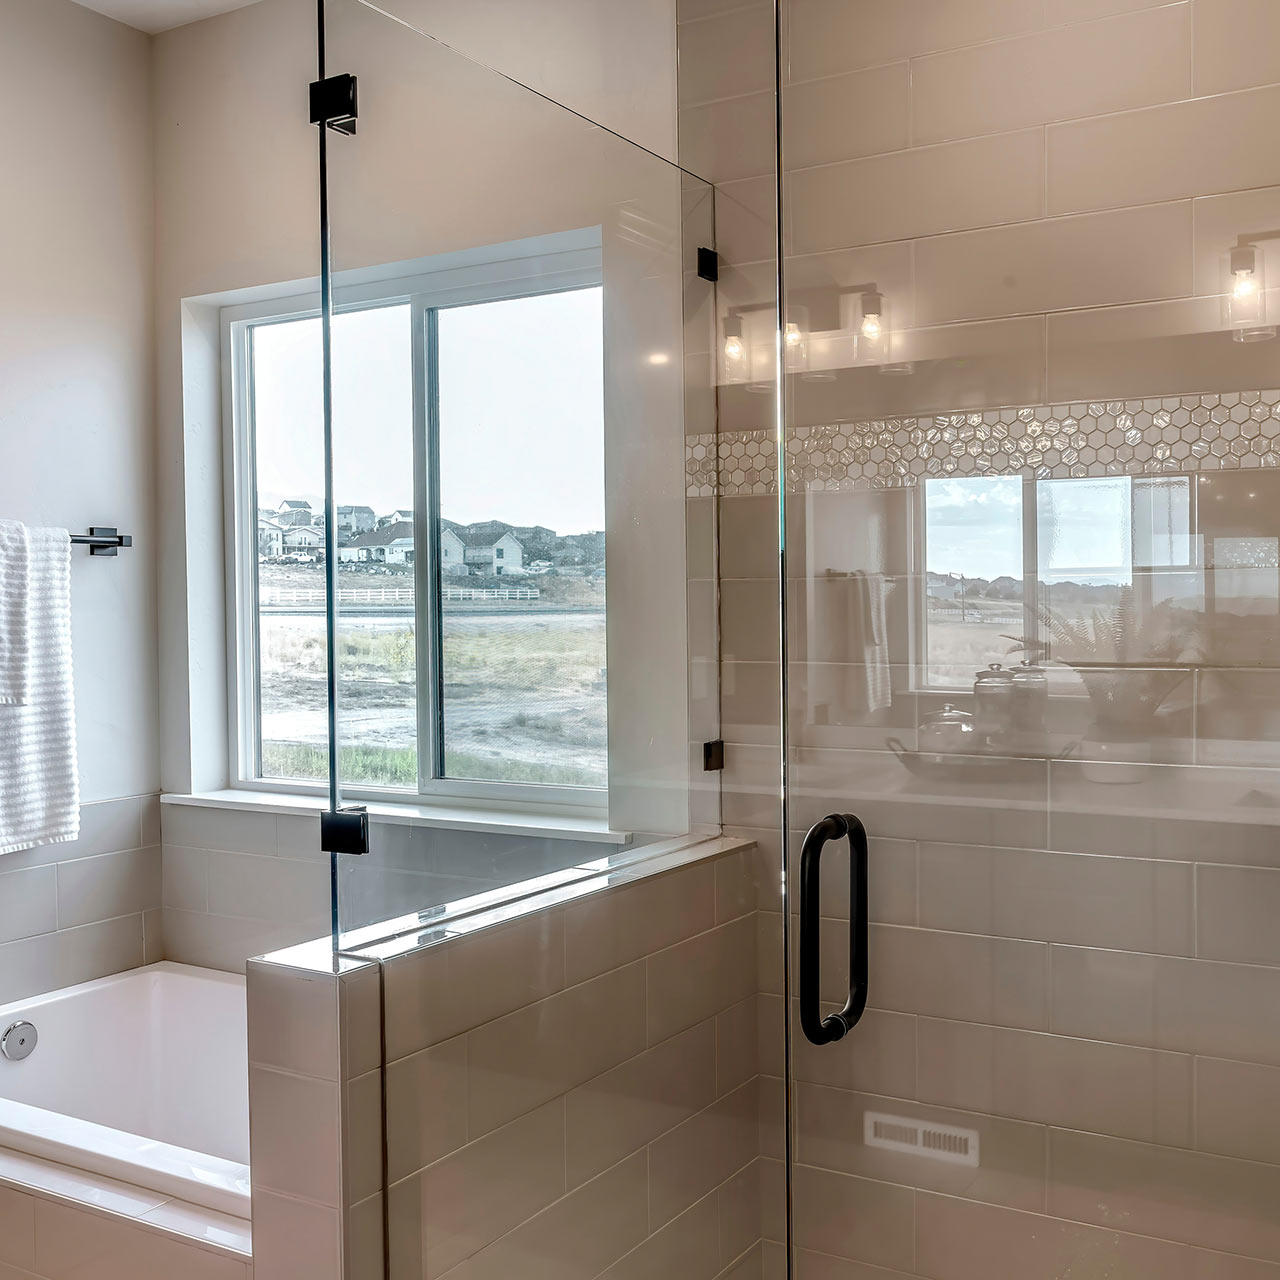 Moderní koupelna s oknem, zabudovanou vanou a sprchovým koutem